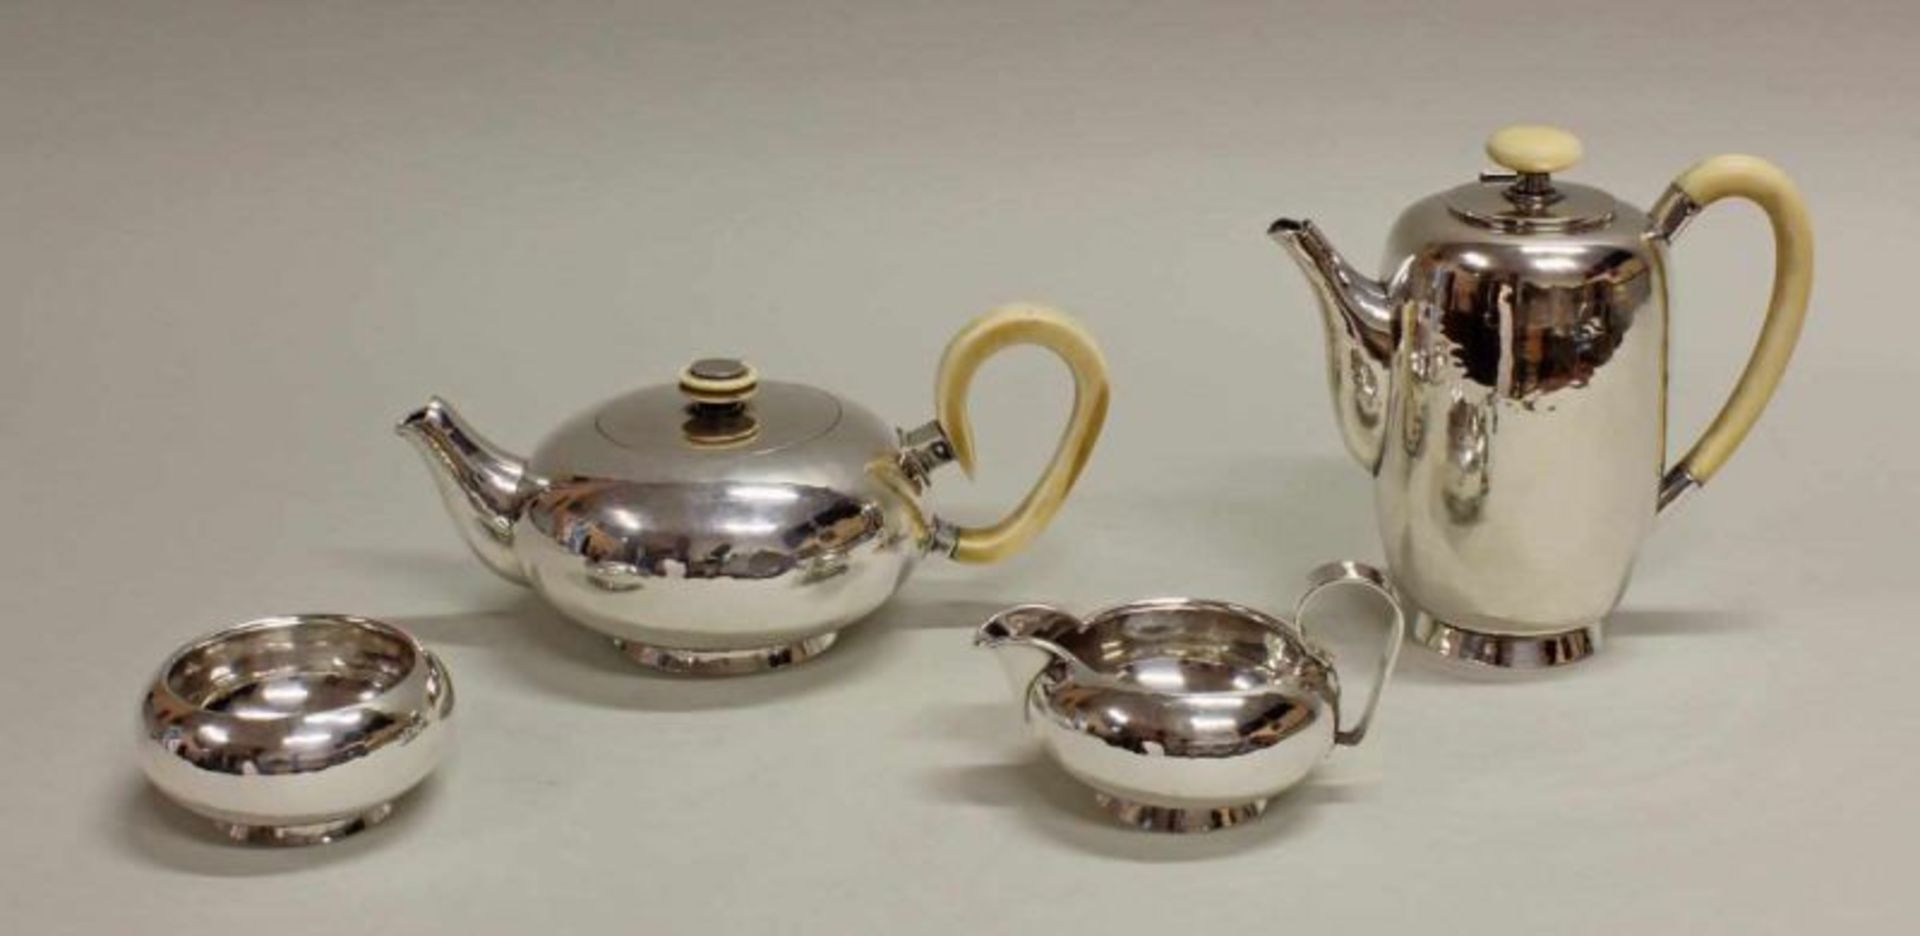 Kaffeekanne, Teekanne, Sahnegießer, Zuckerschale, Silber 800, deutsch, wohl 1930er Jahre,